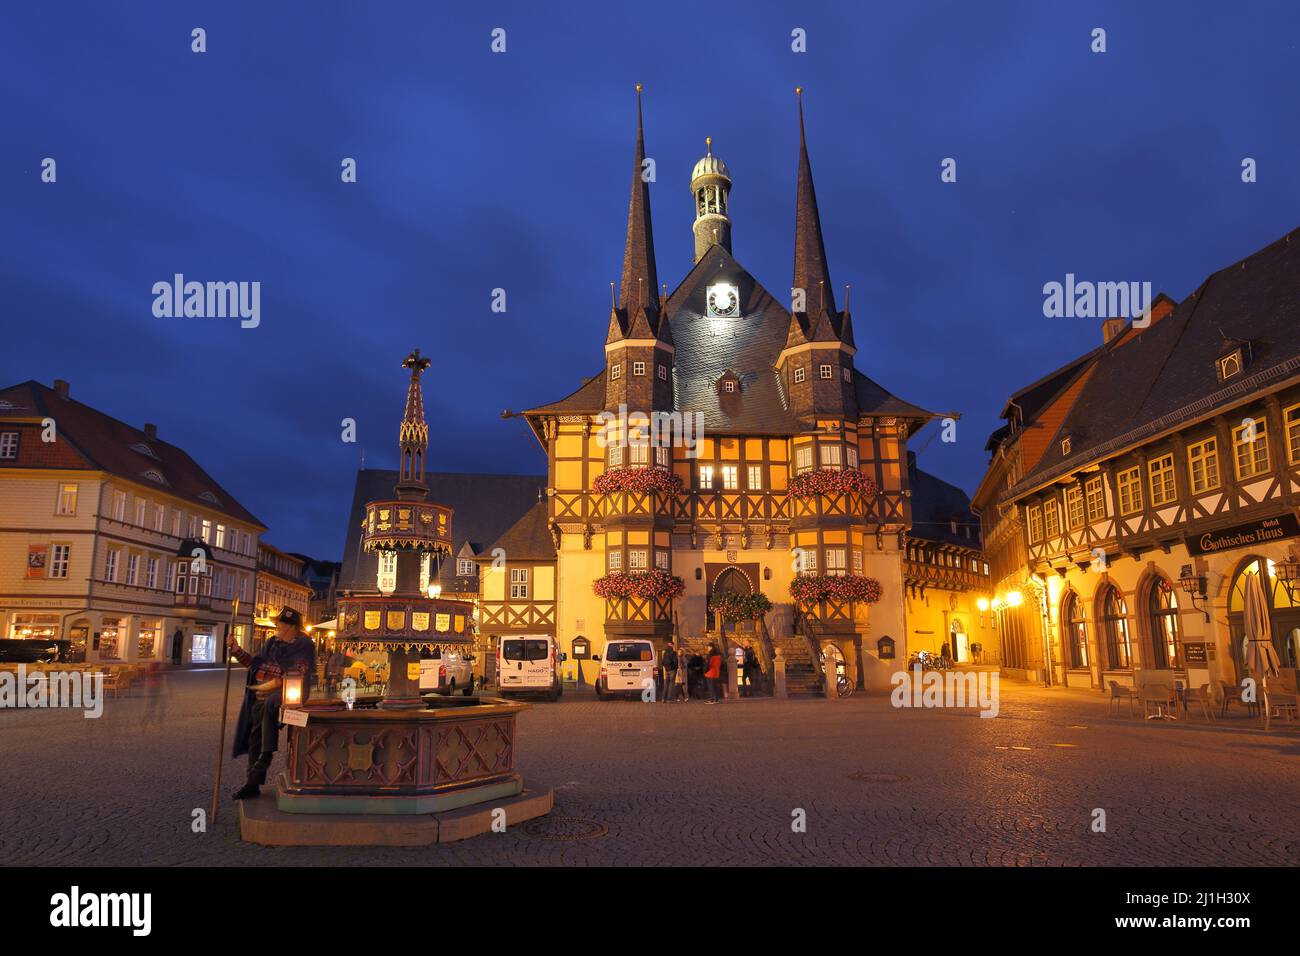 Marktplatz mit Rathaus und Wohltäterbrunnen während der blauen Stunde in Wernigerode, Sachsen-Anhalt, Deutschland Stockfoto